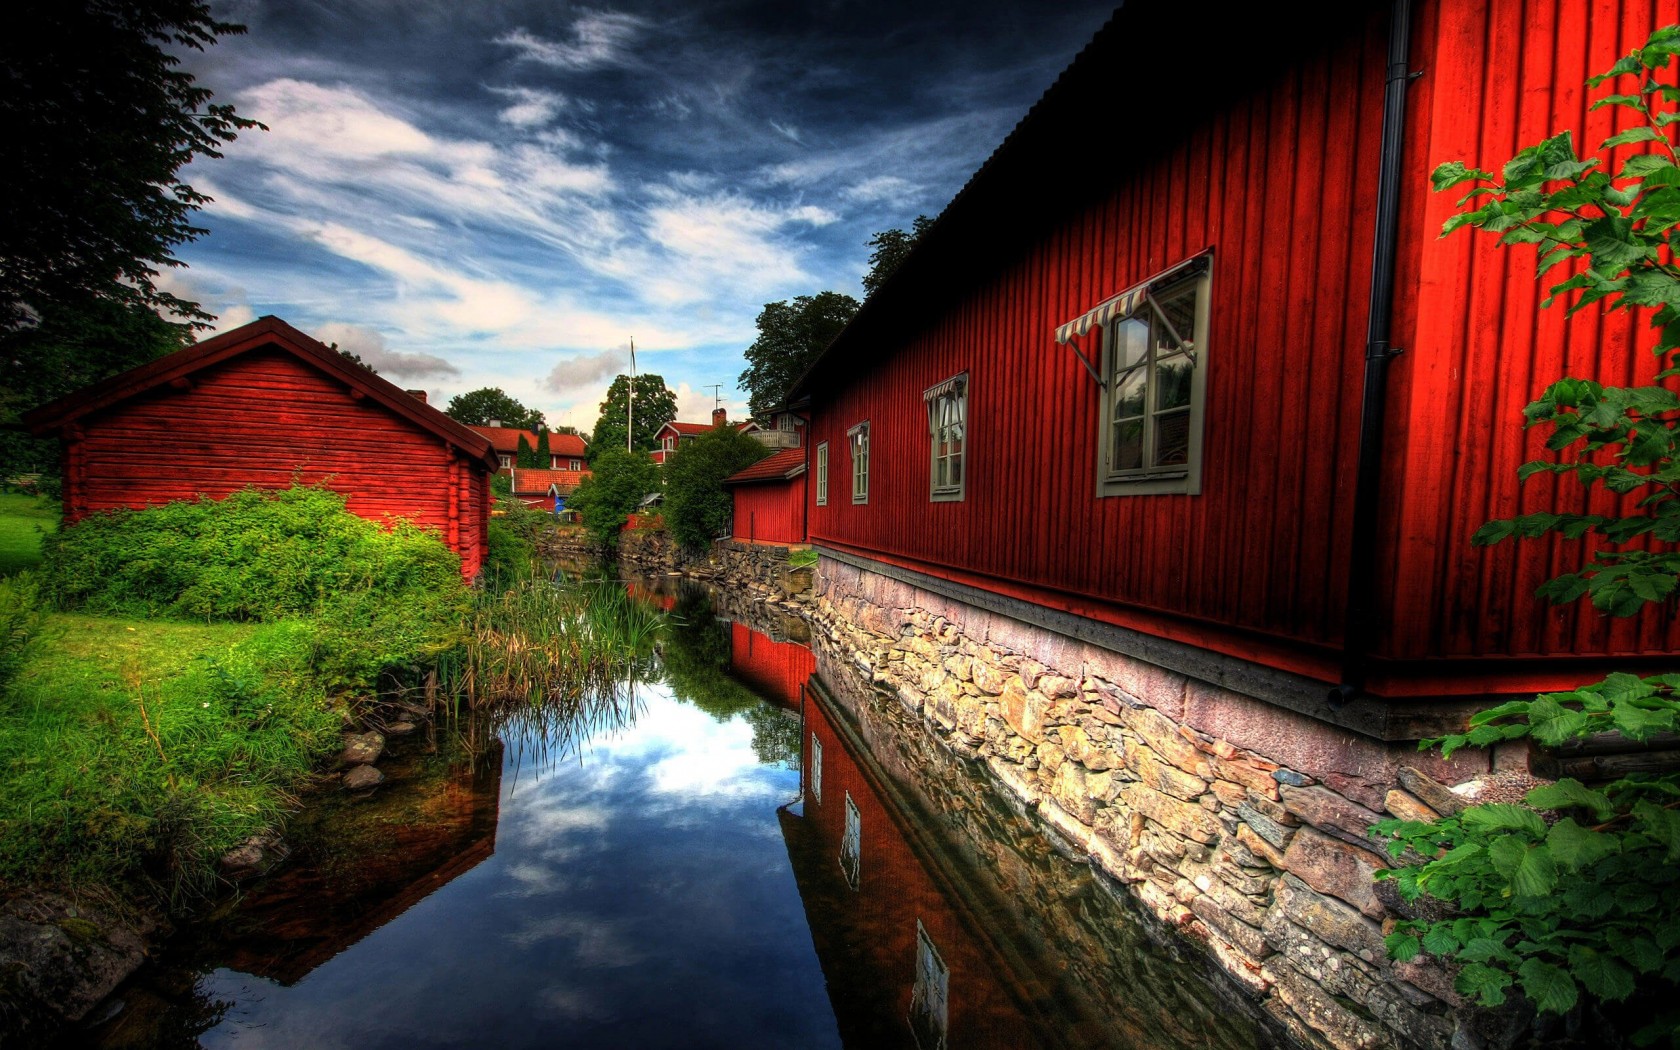 Red Village, Norberg, Sweden Wallpaper for Desktop 1680x1050